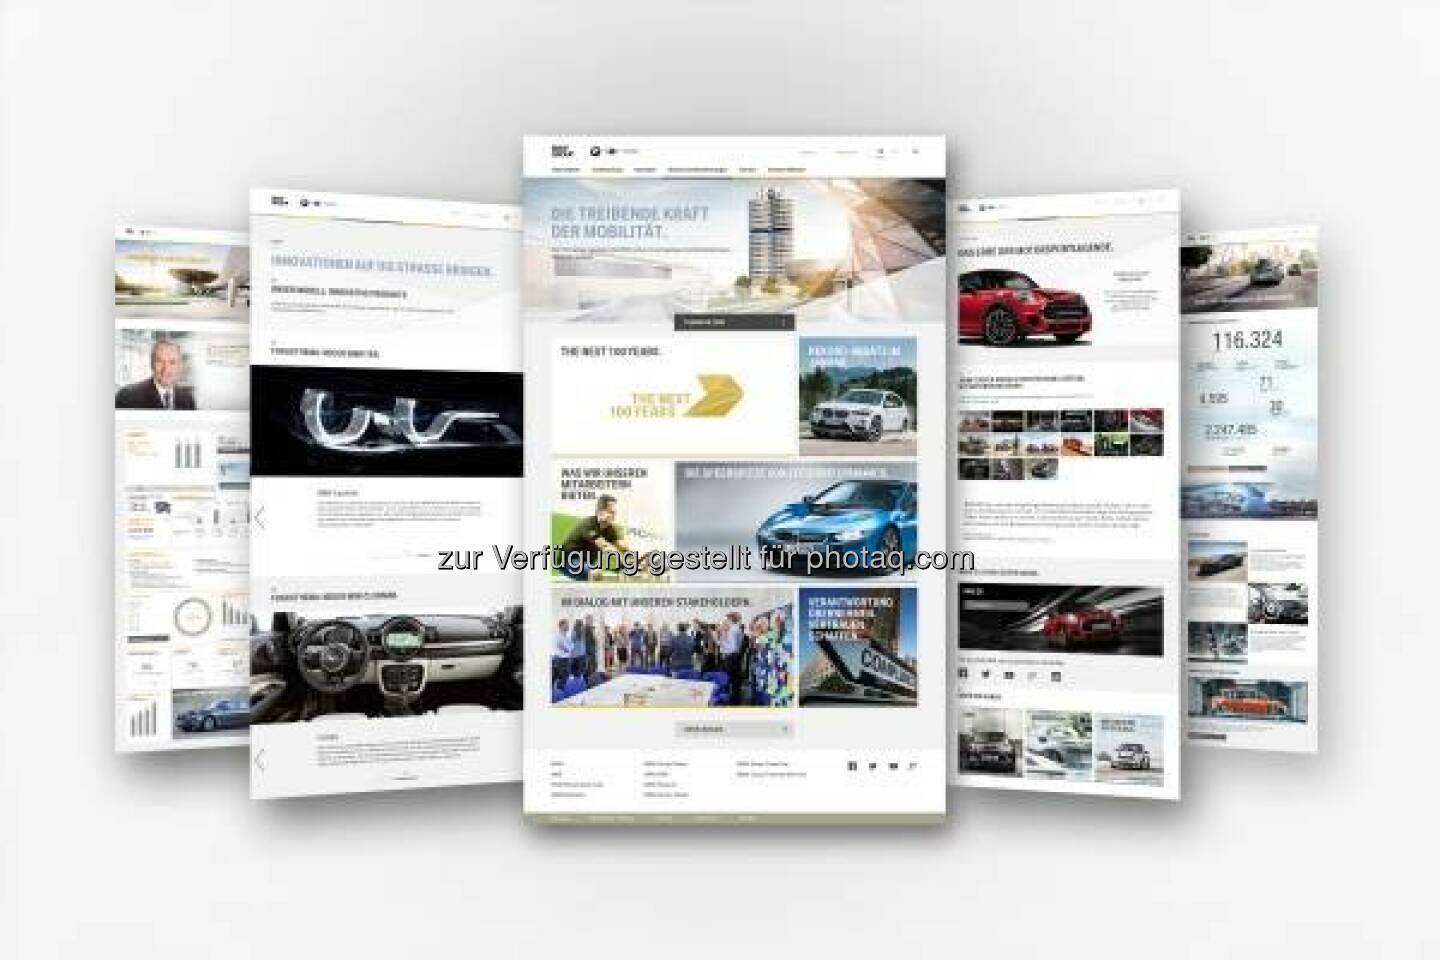 BMW Group erneuert Onlineauftritt www.bmwgroup.com : Überarbeitetes Design mit neuer Bildsprache und zusätzlicher Funktionalität : Optimiert für die Anforderungen einer modernen und zukunftsgerichteten Online-Kommunikation : © BMW Group